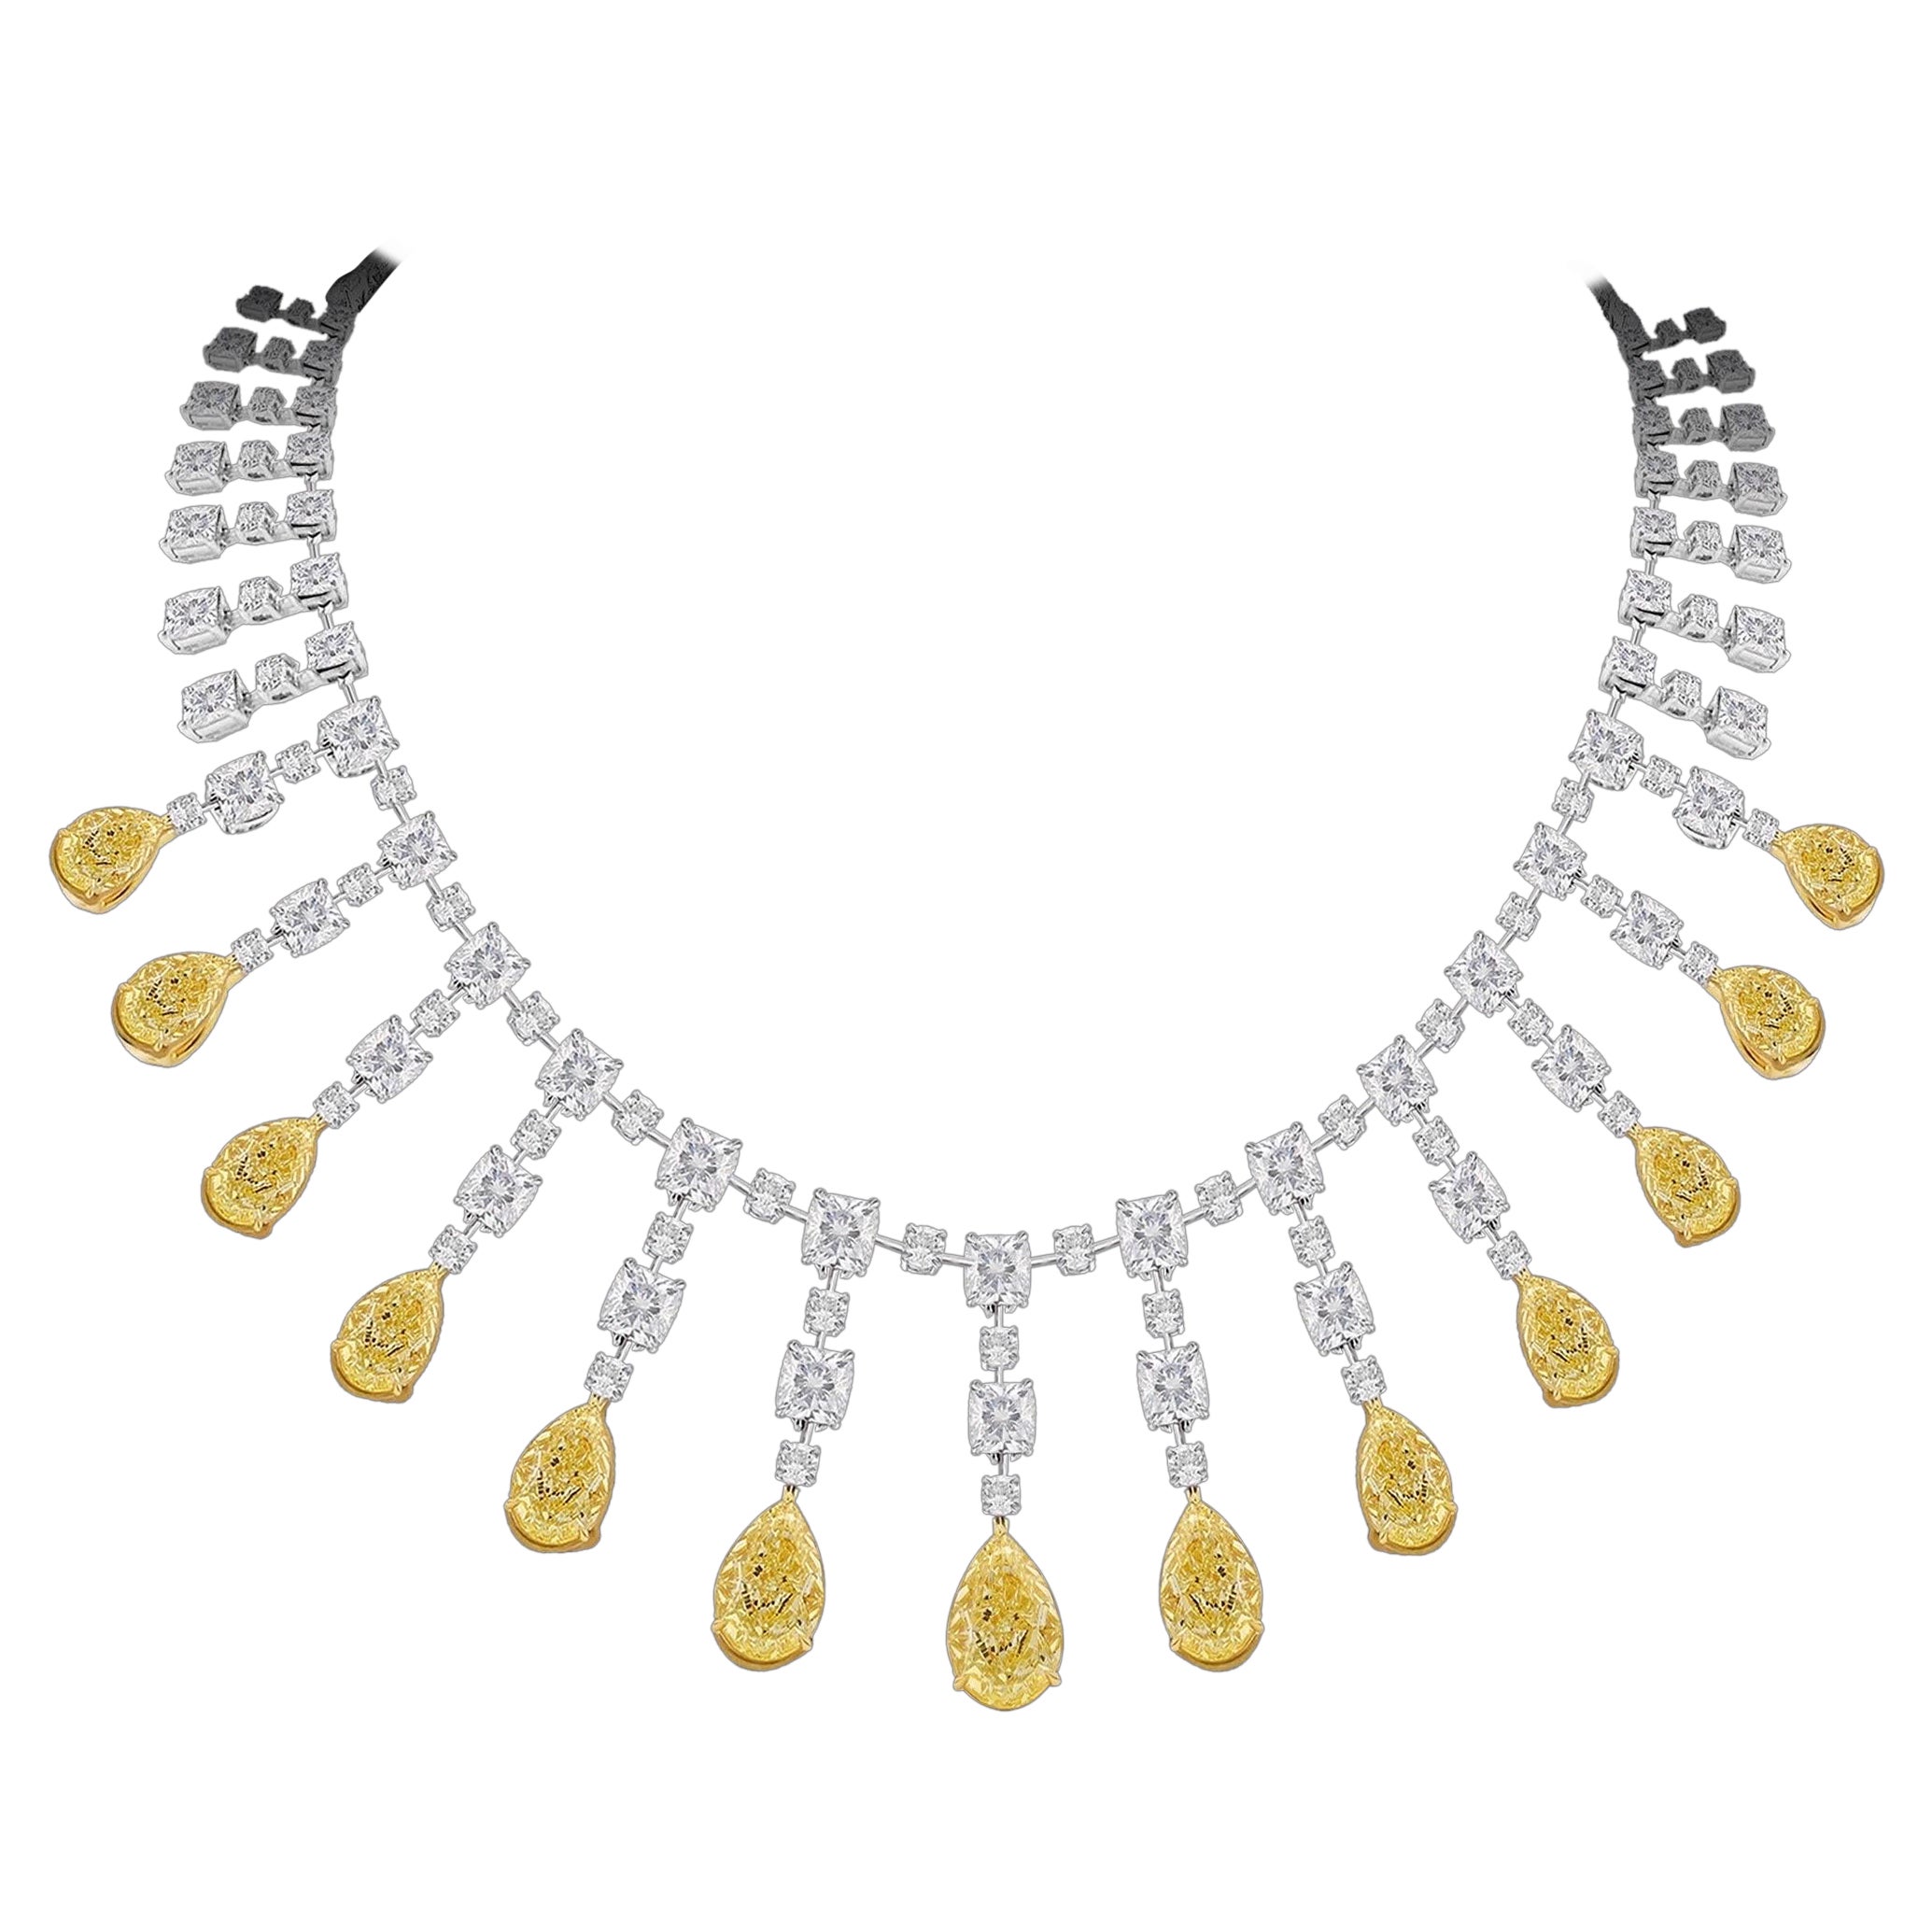 Emilio Jewelry, collier de diamants fantaisie certifié Gia de 69,00 carats 